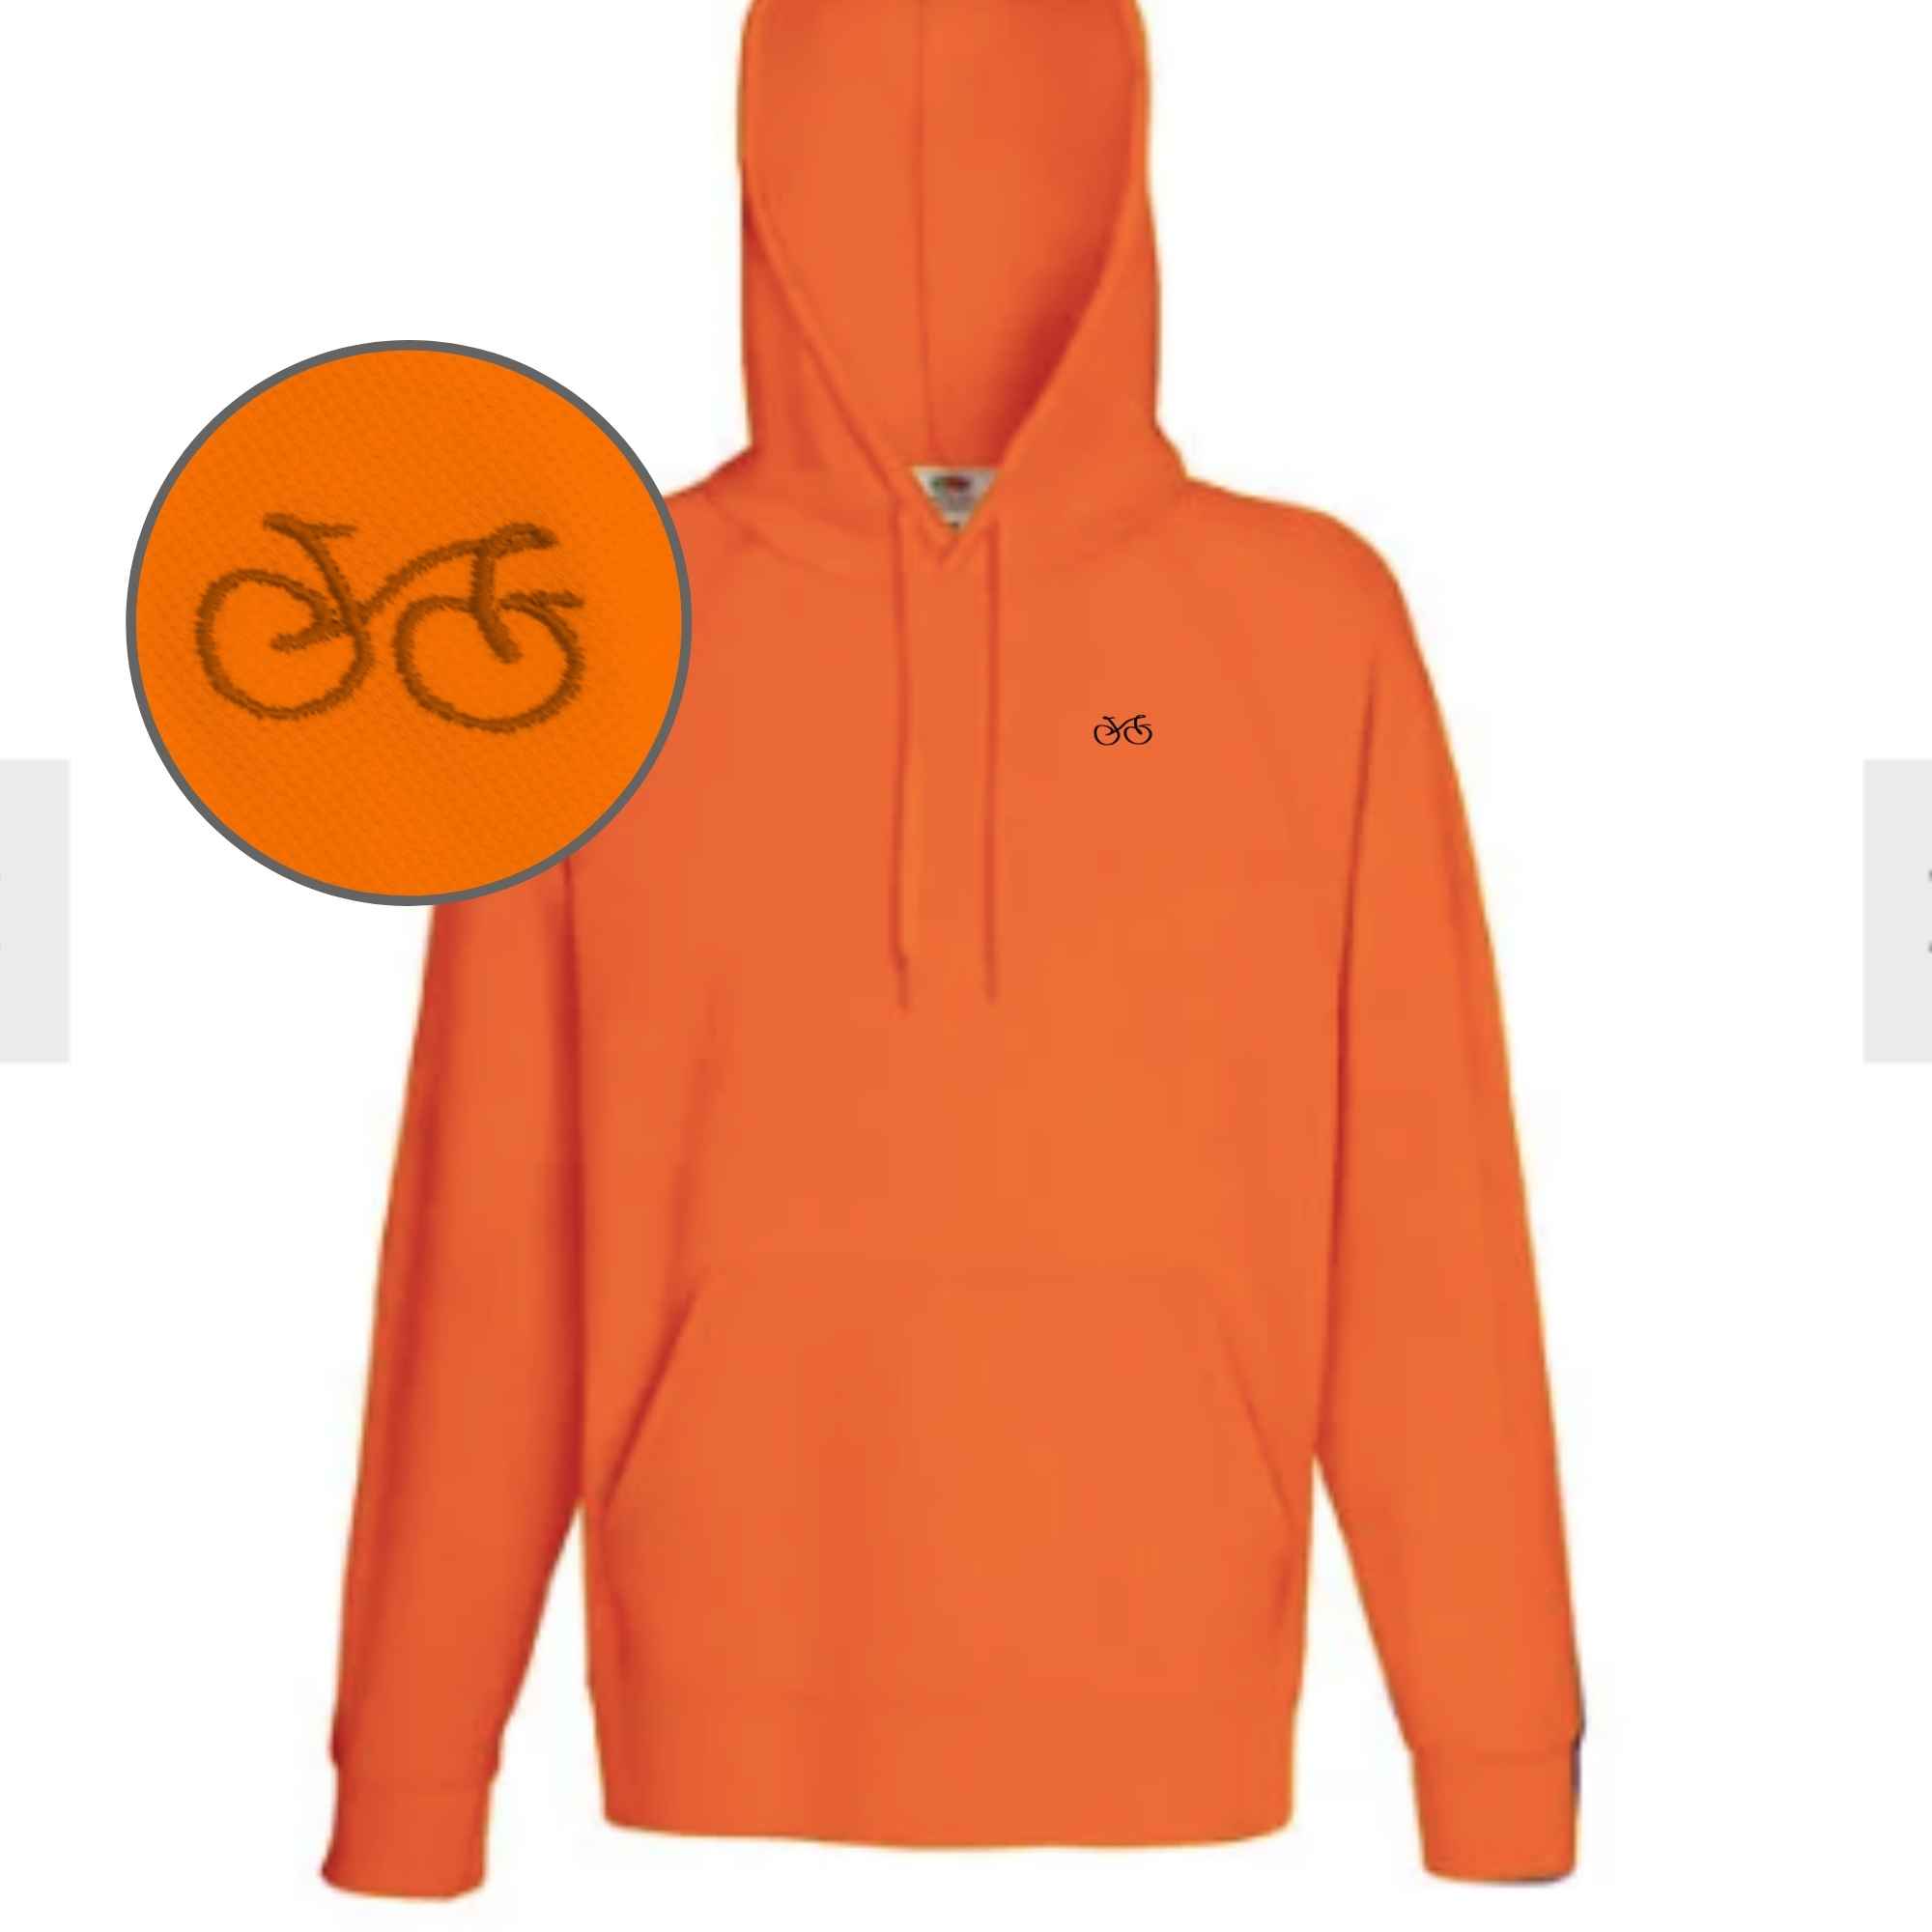 Kapuzenpulli mit Fahrradmotiv bestickt in der Farbe orange schlank